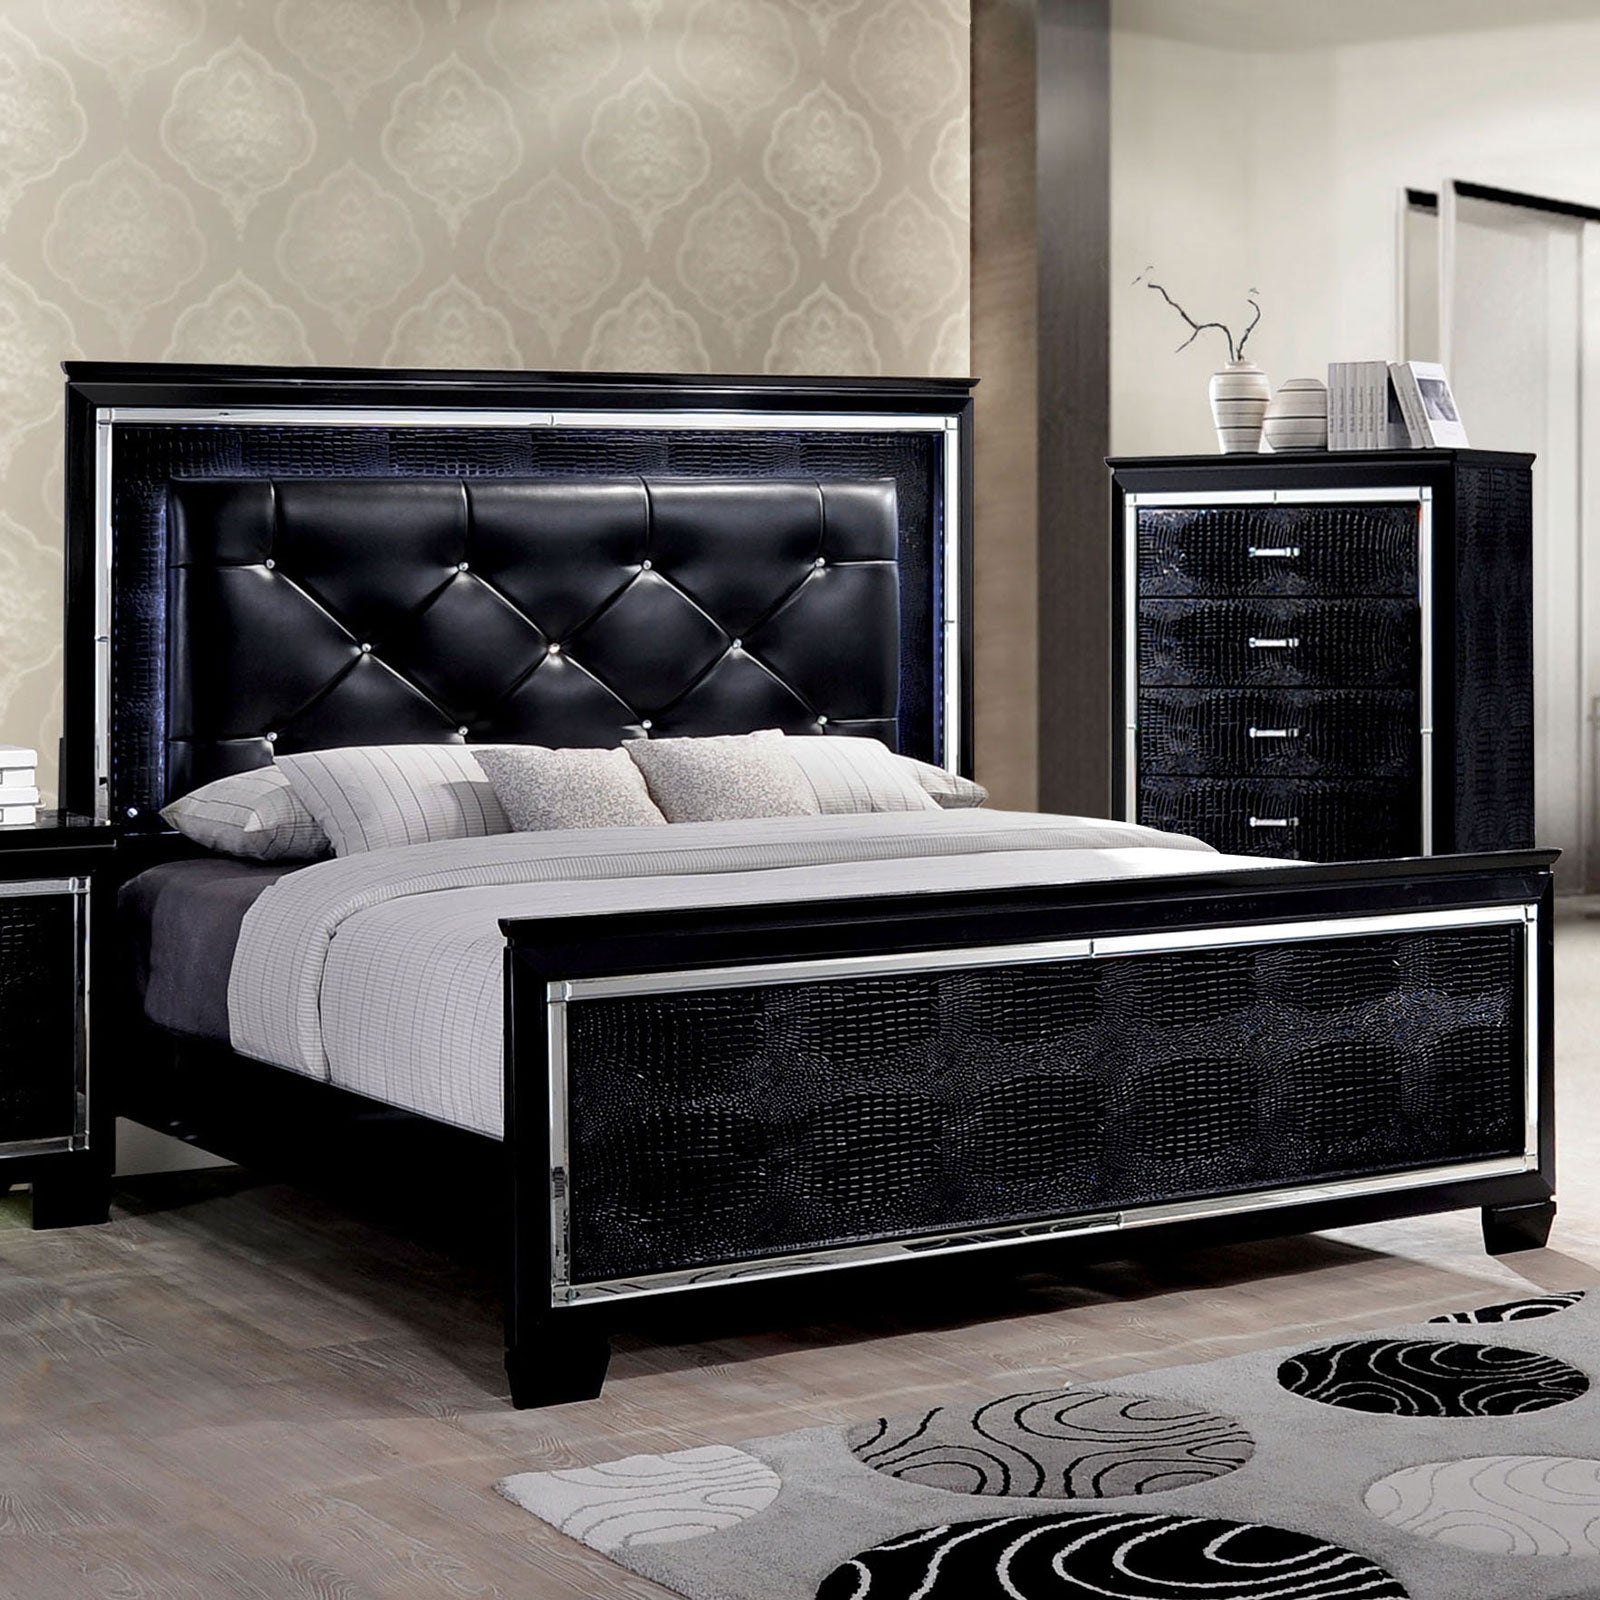 BELLANOVA Black Queen Bed image